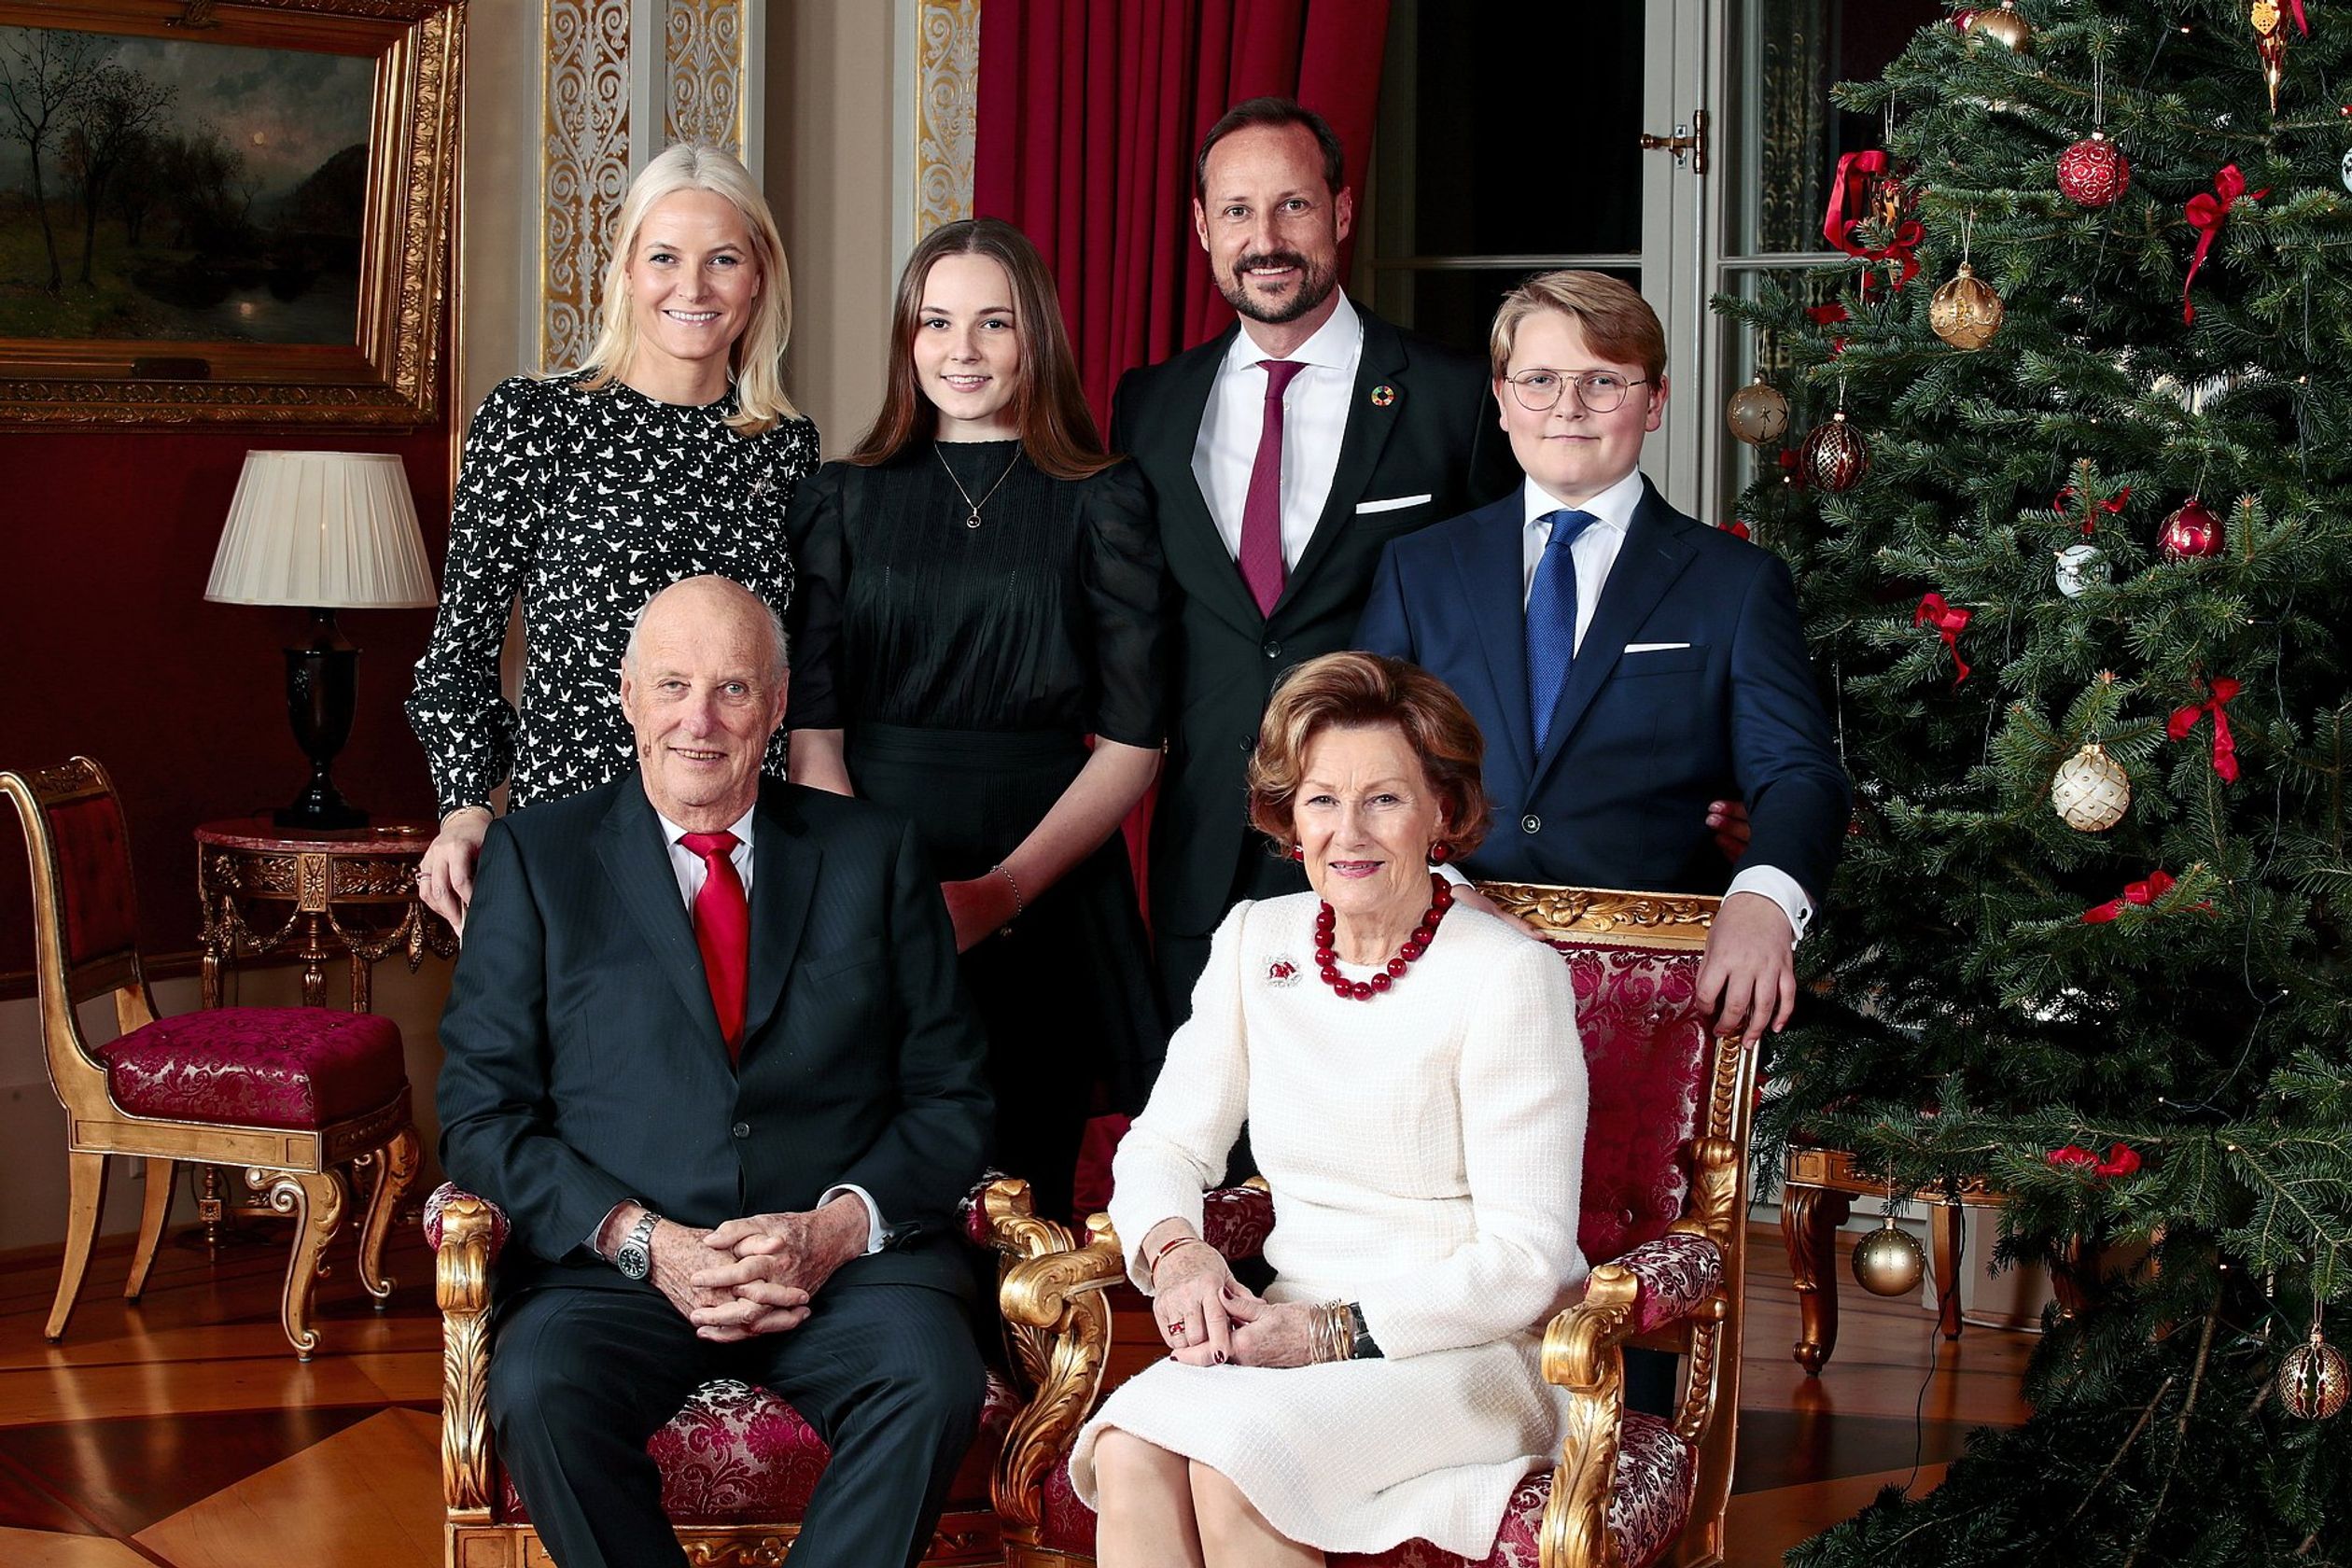 De Noorse koning Harald en koningin Sonja, kroonprins Haakon en zijn vrouw Mette-Marit met hun